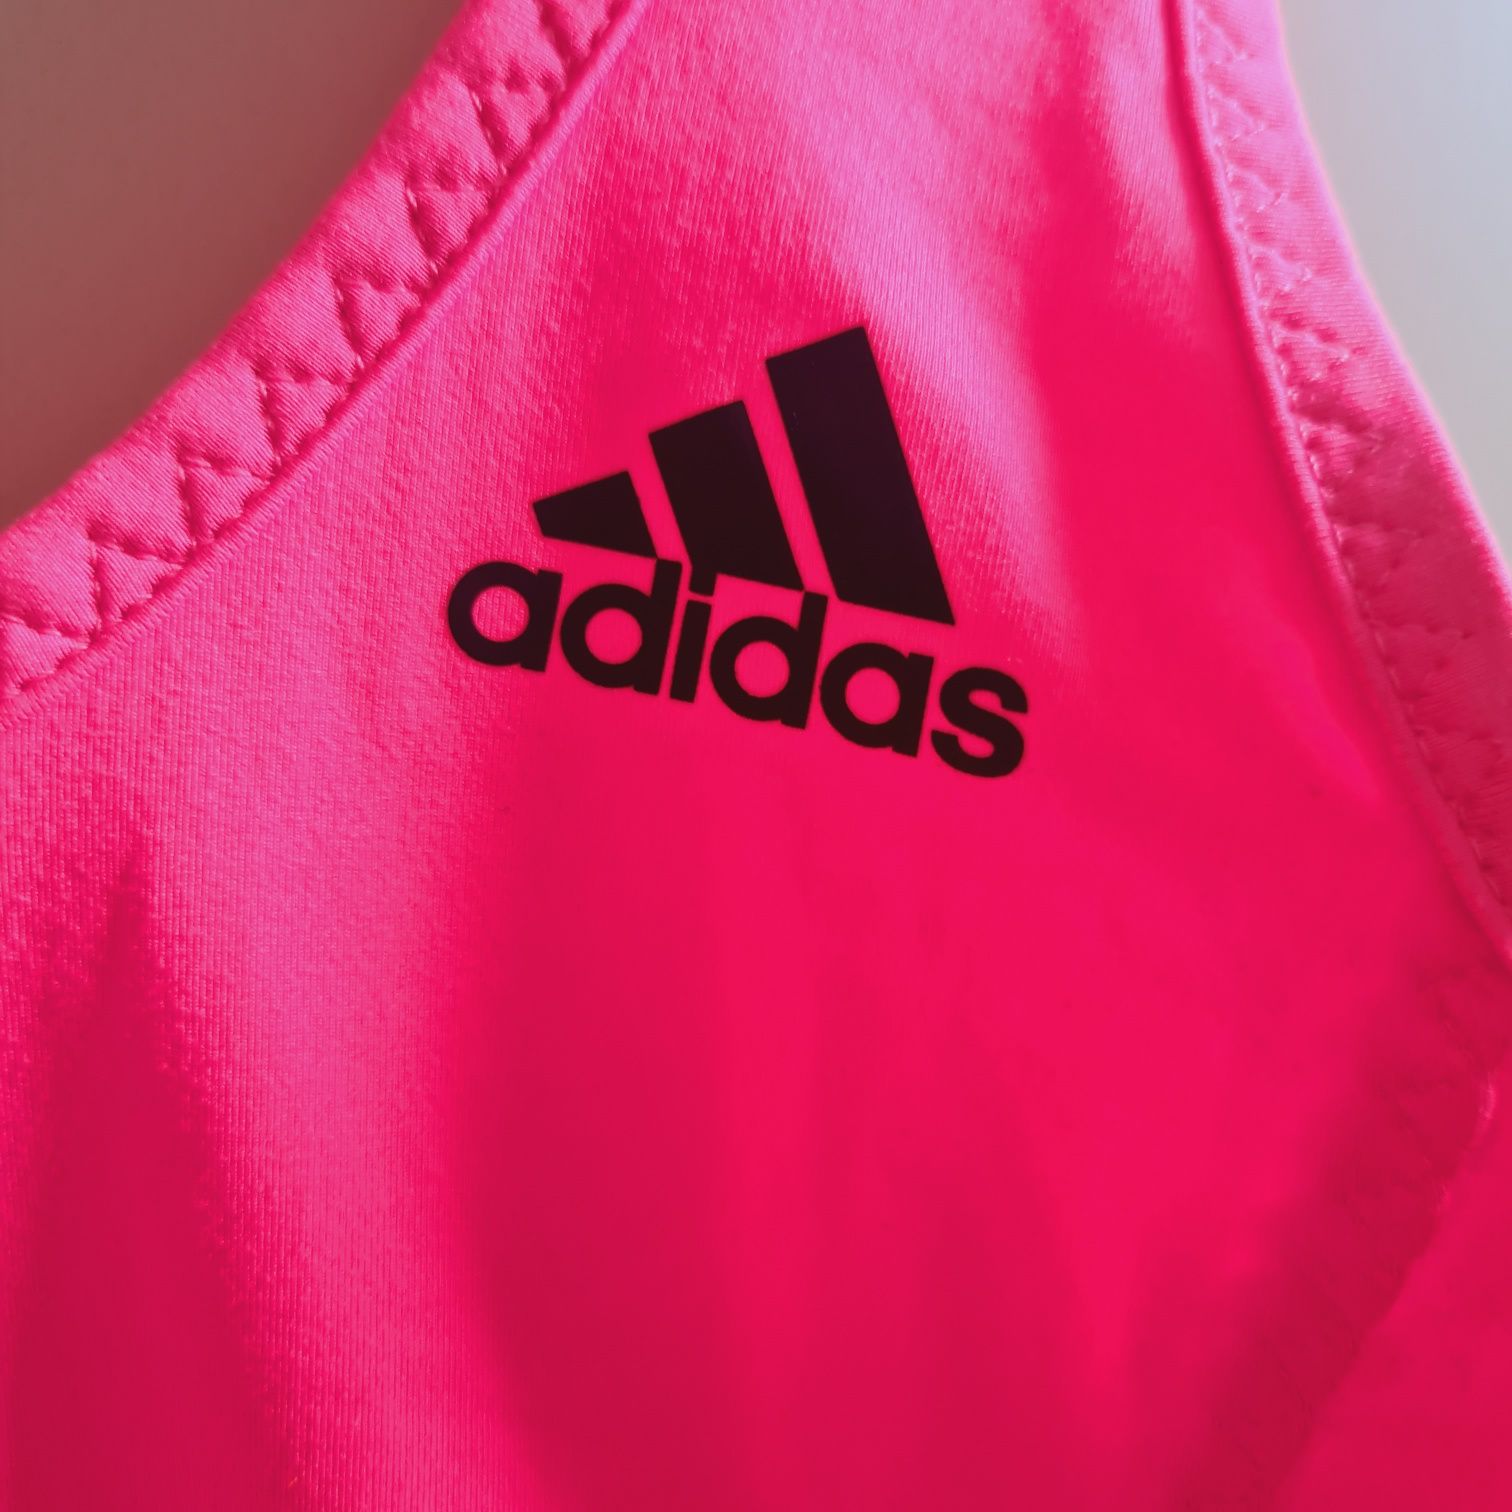 Różowy top sportowy od adidas